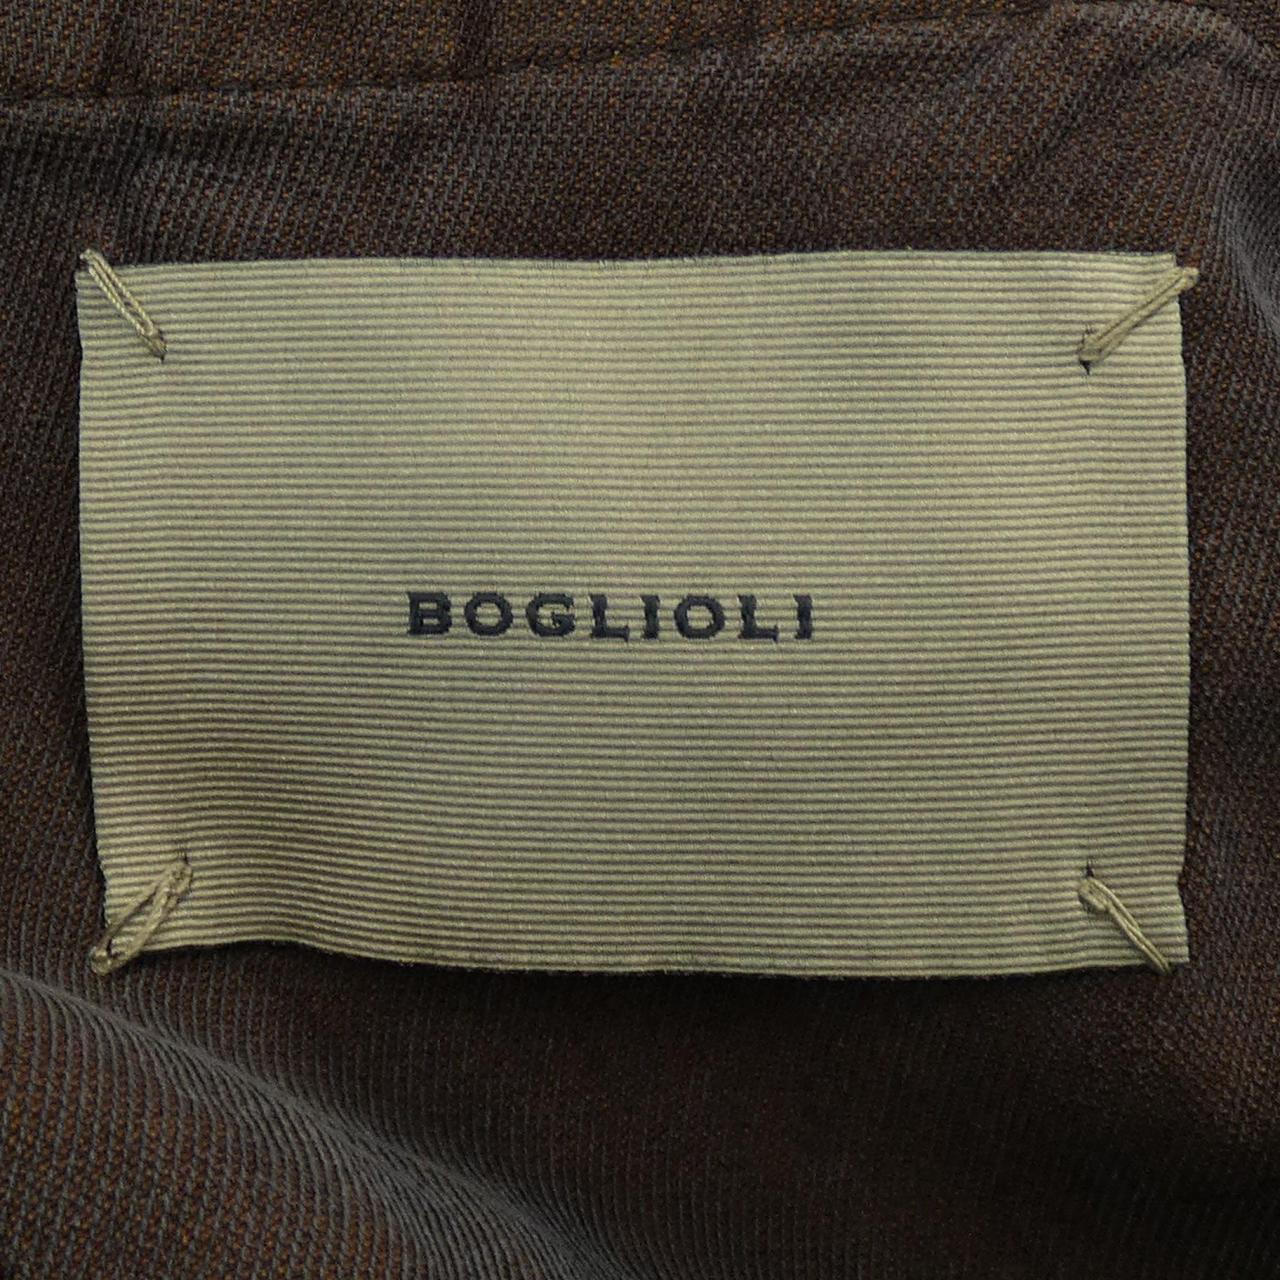 ボリオリ BOGLIOLI ジャケット